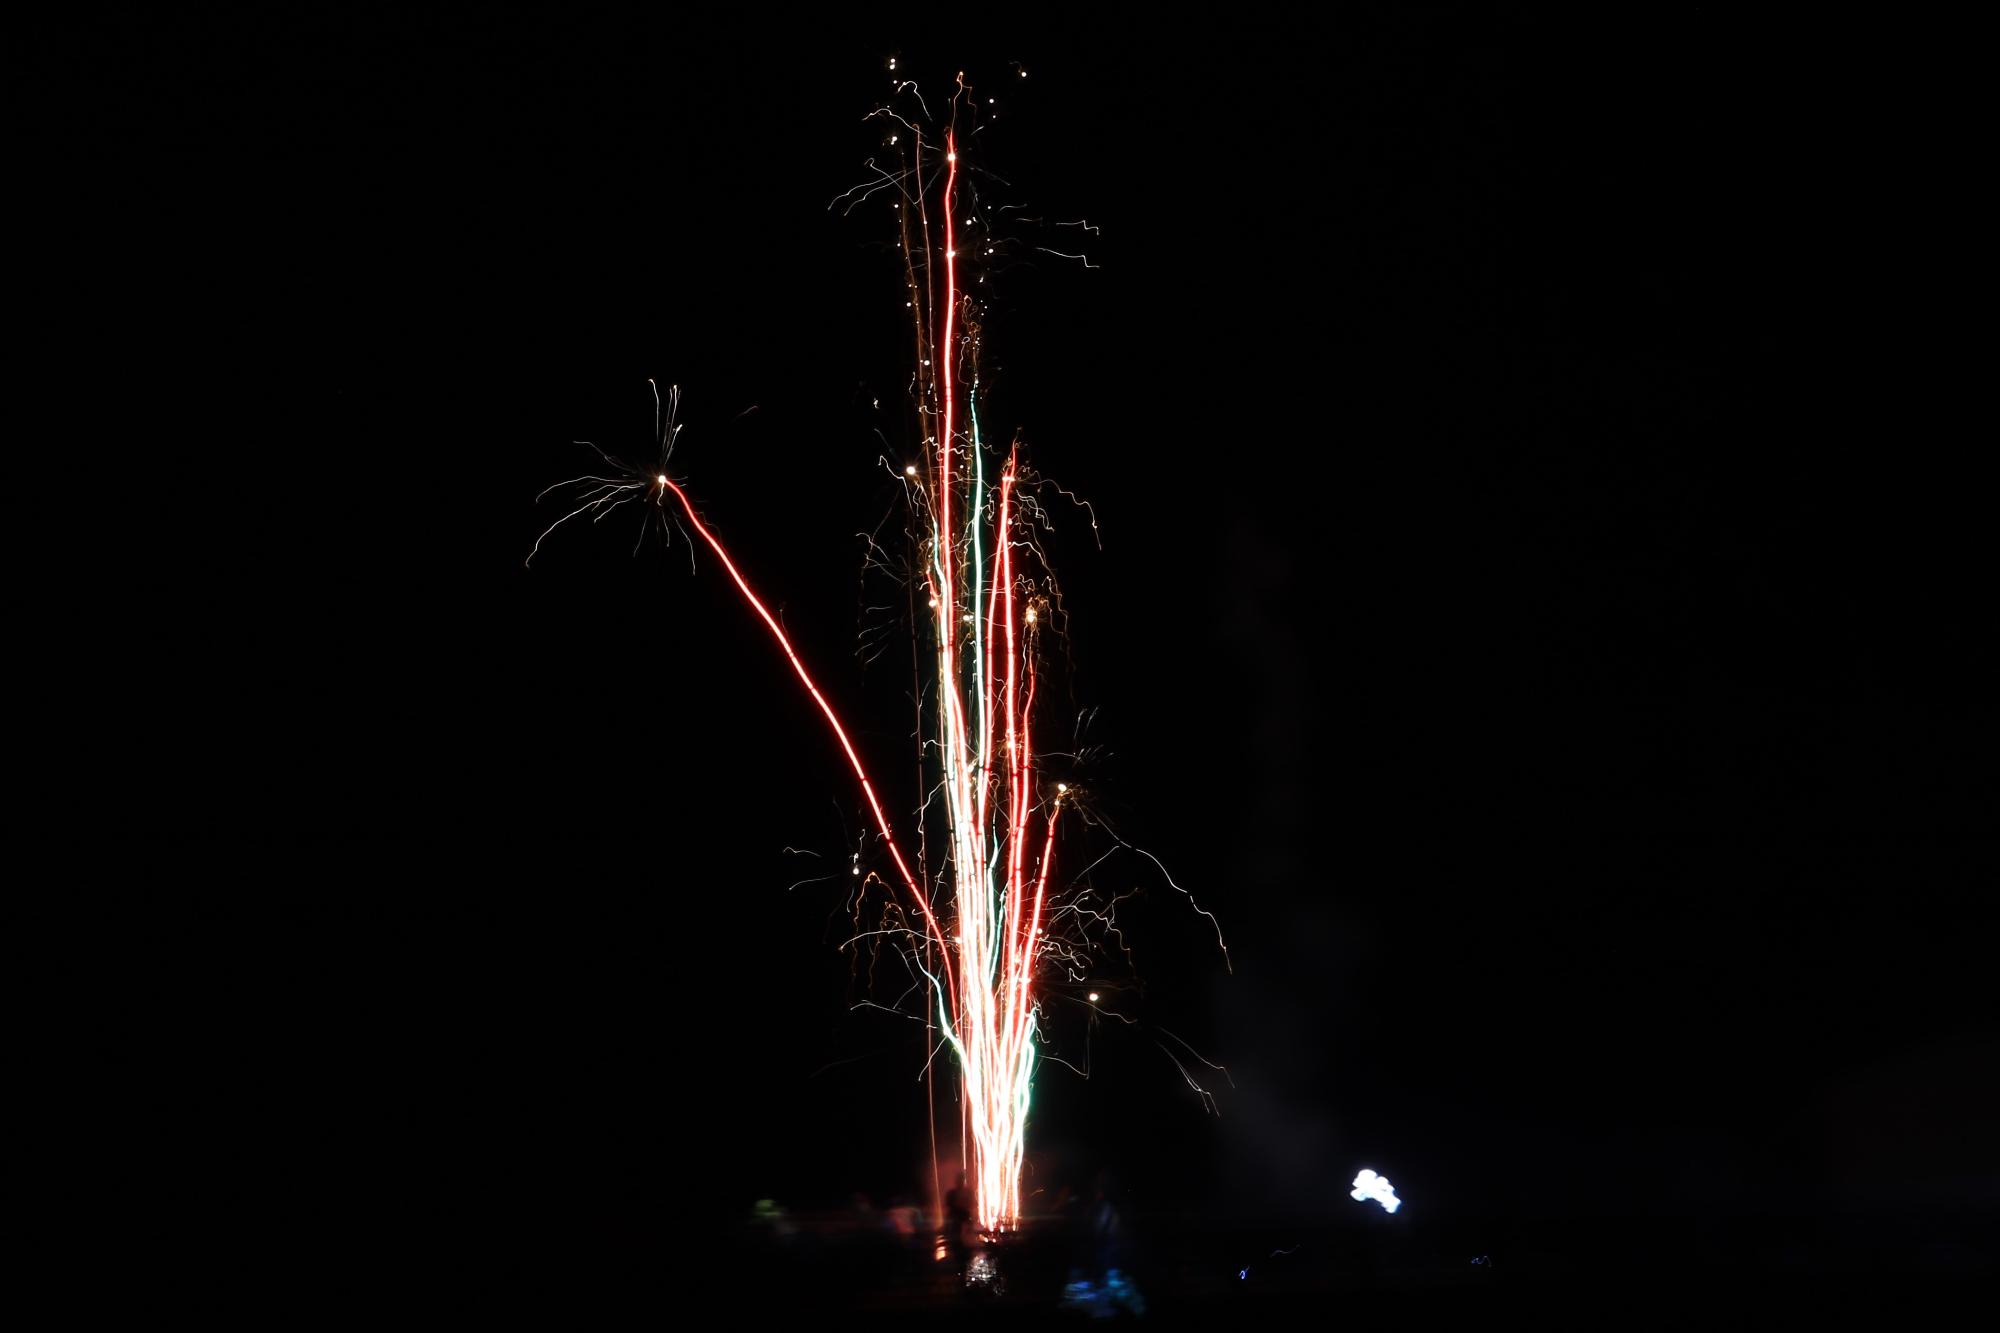 有志らが打ち上げた花火が空に真っ直ぐ上がっている写真